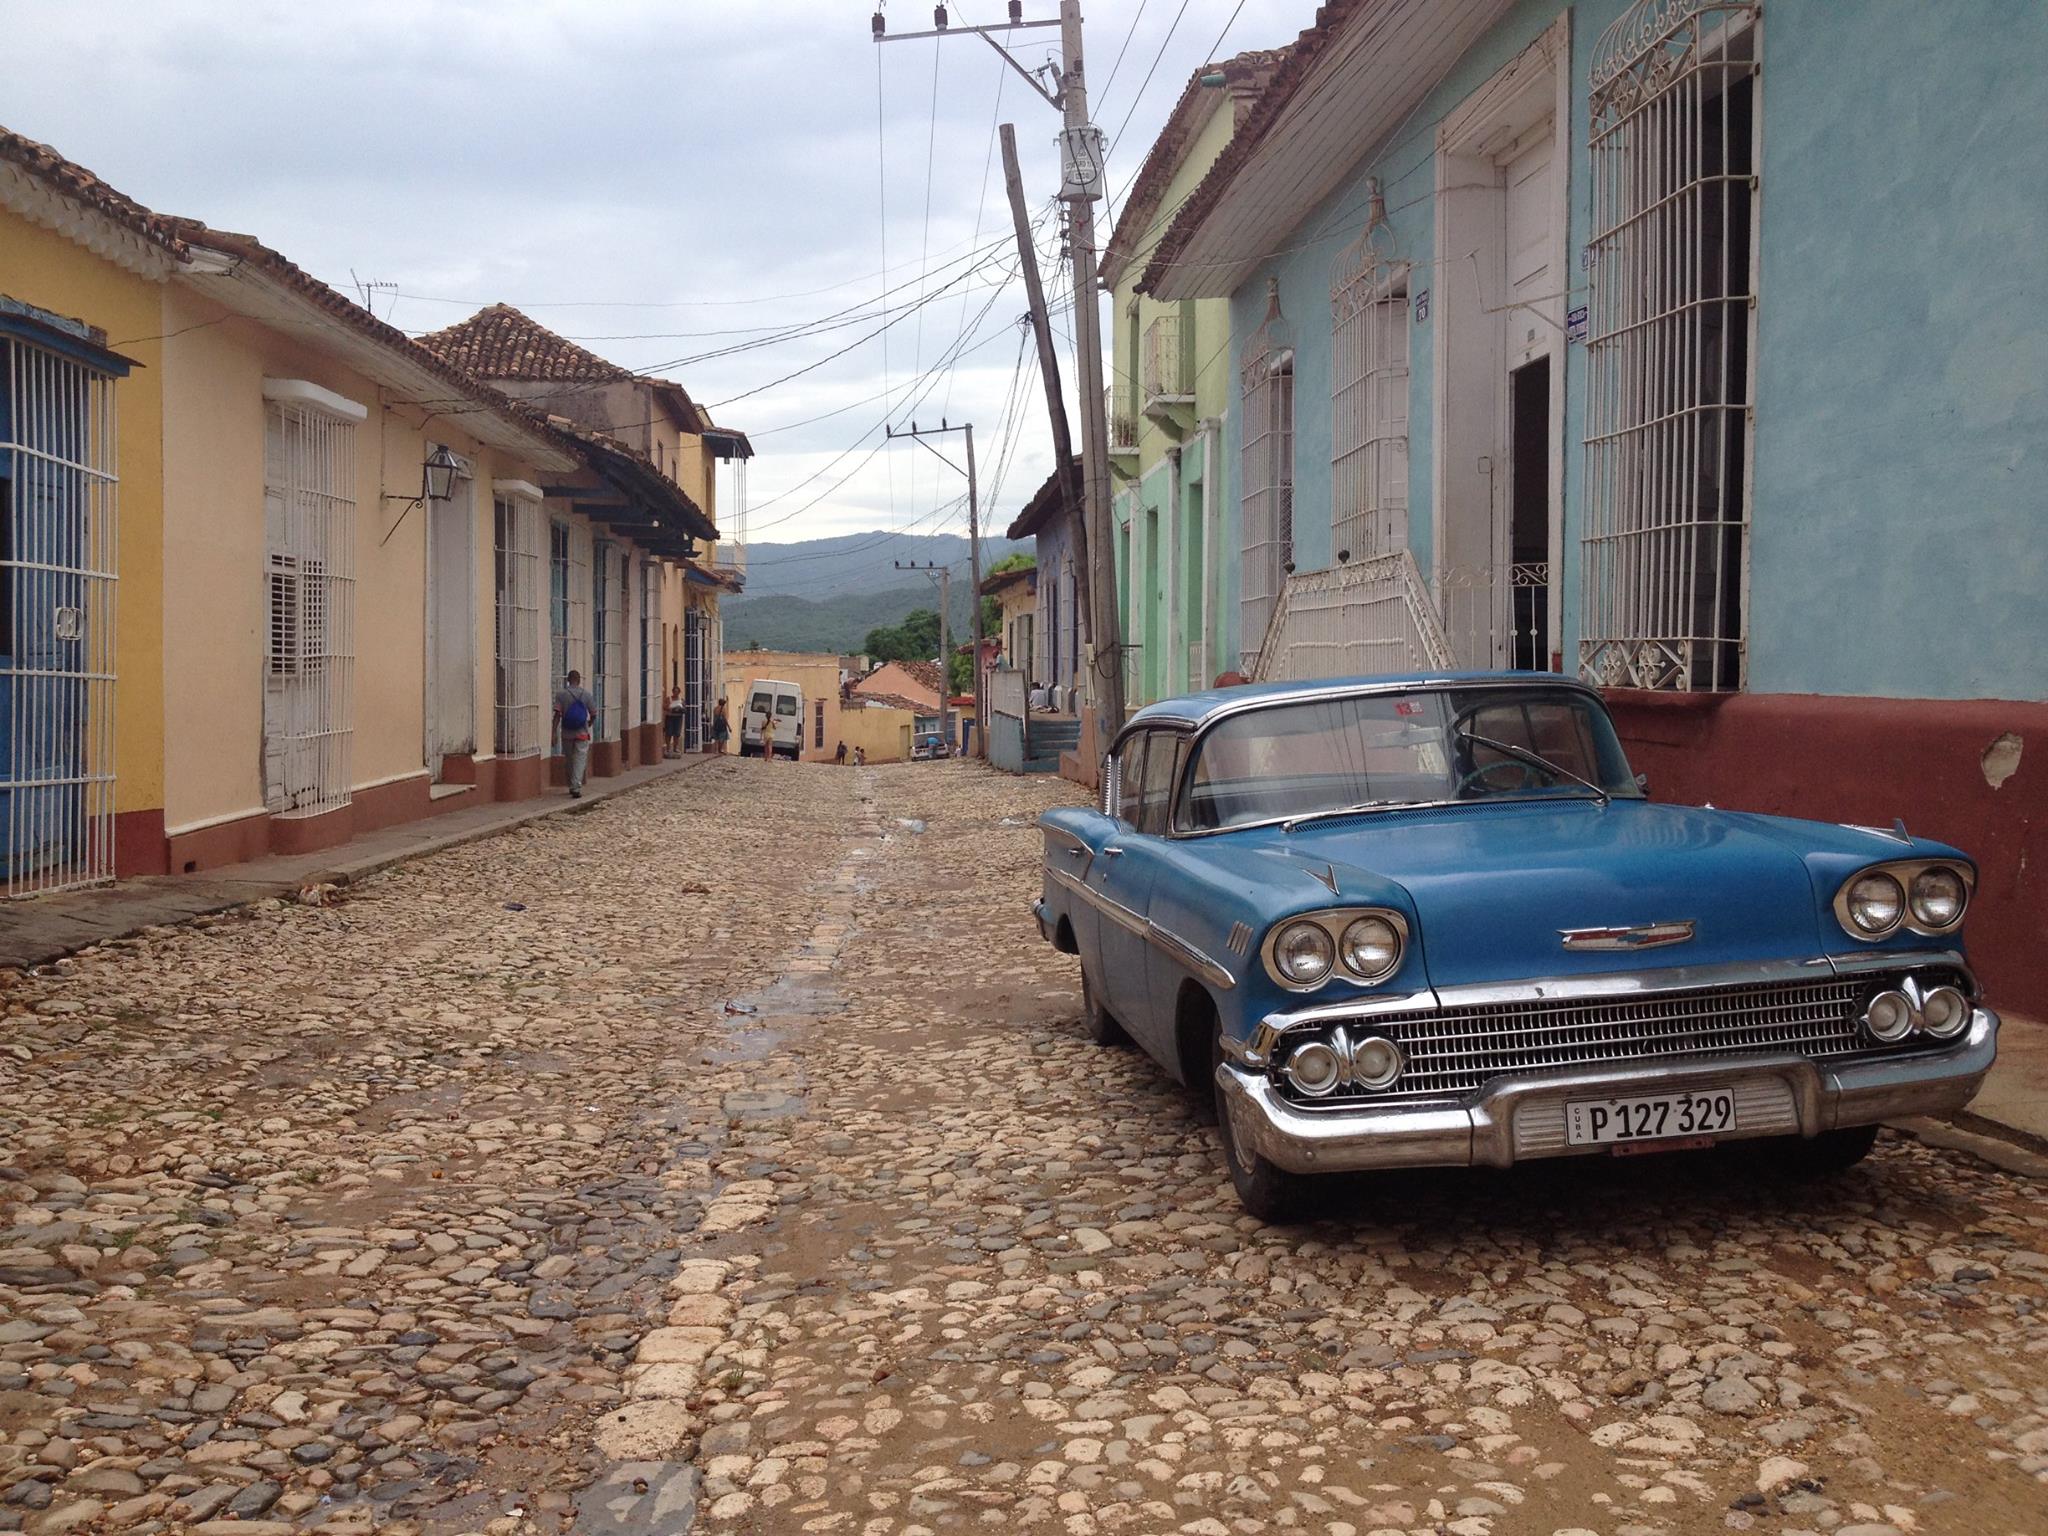 Historic Trinidad, Cuba